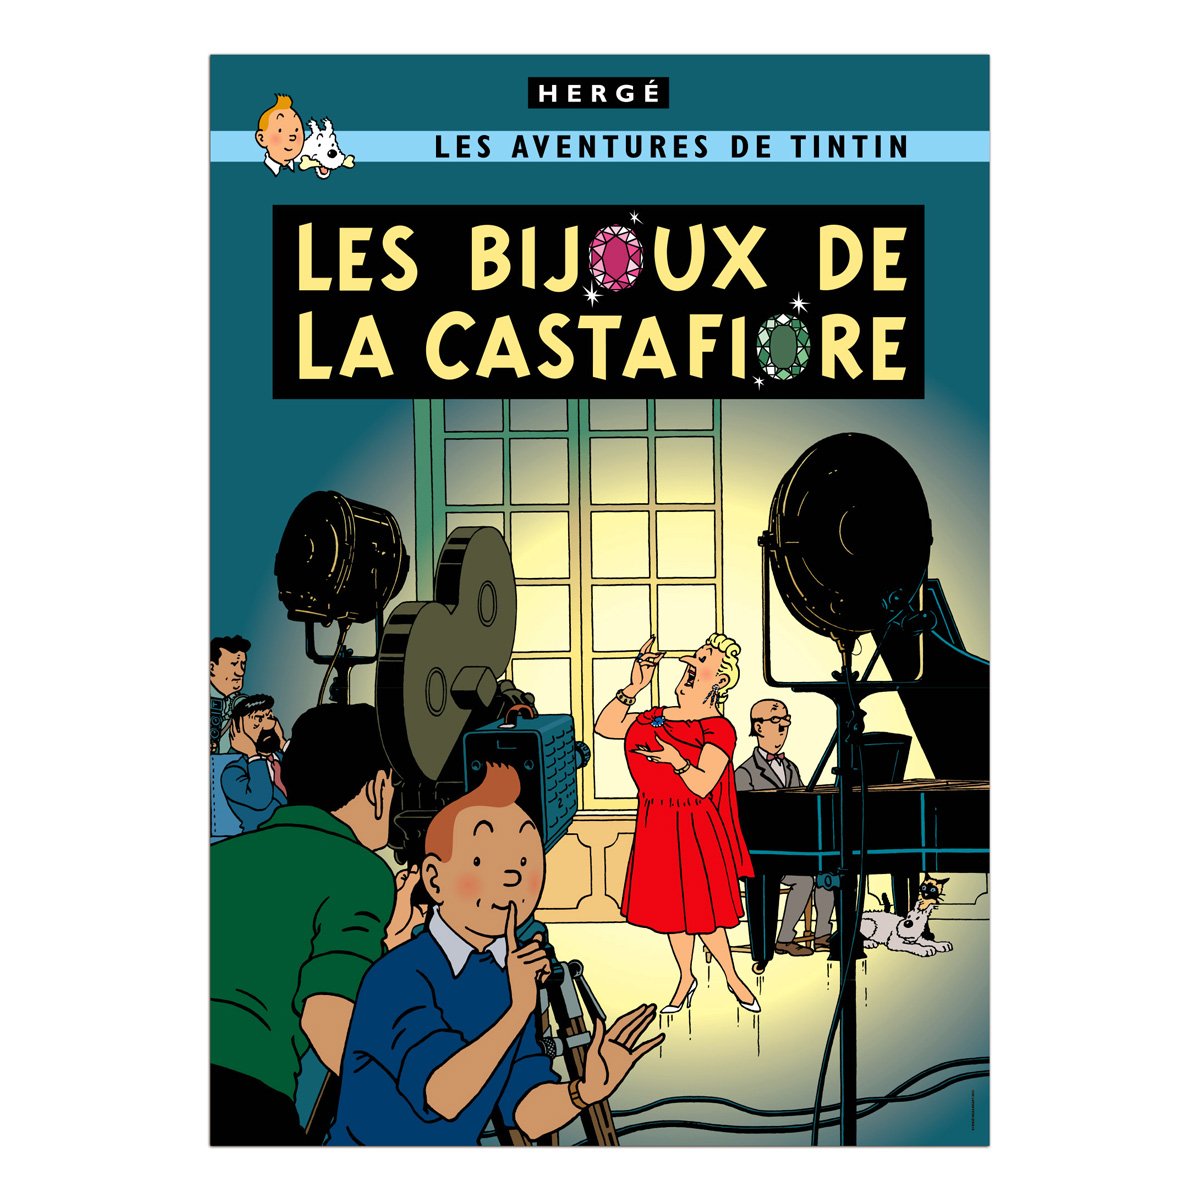 Tintin book postcards Castafiore